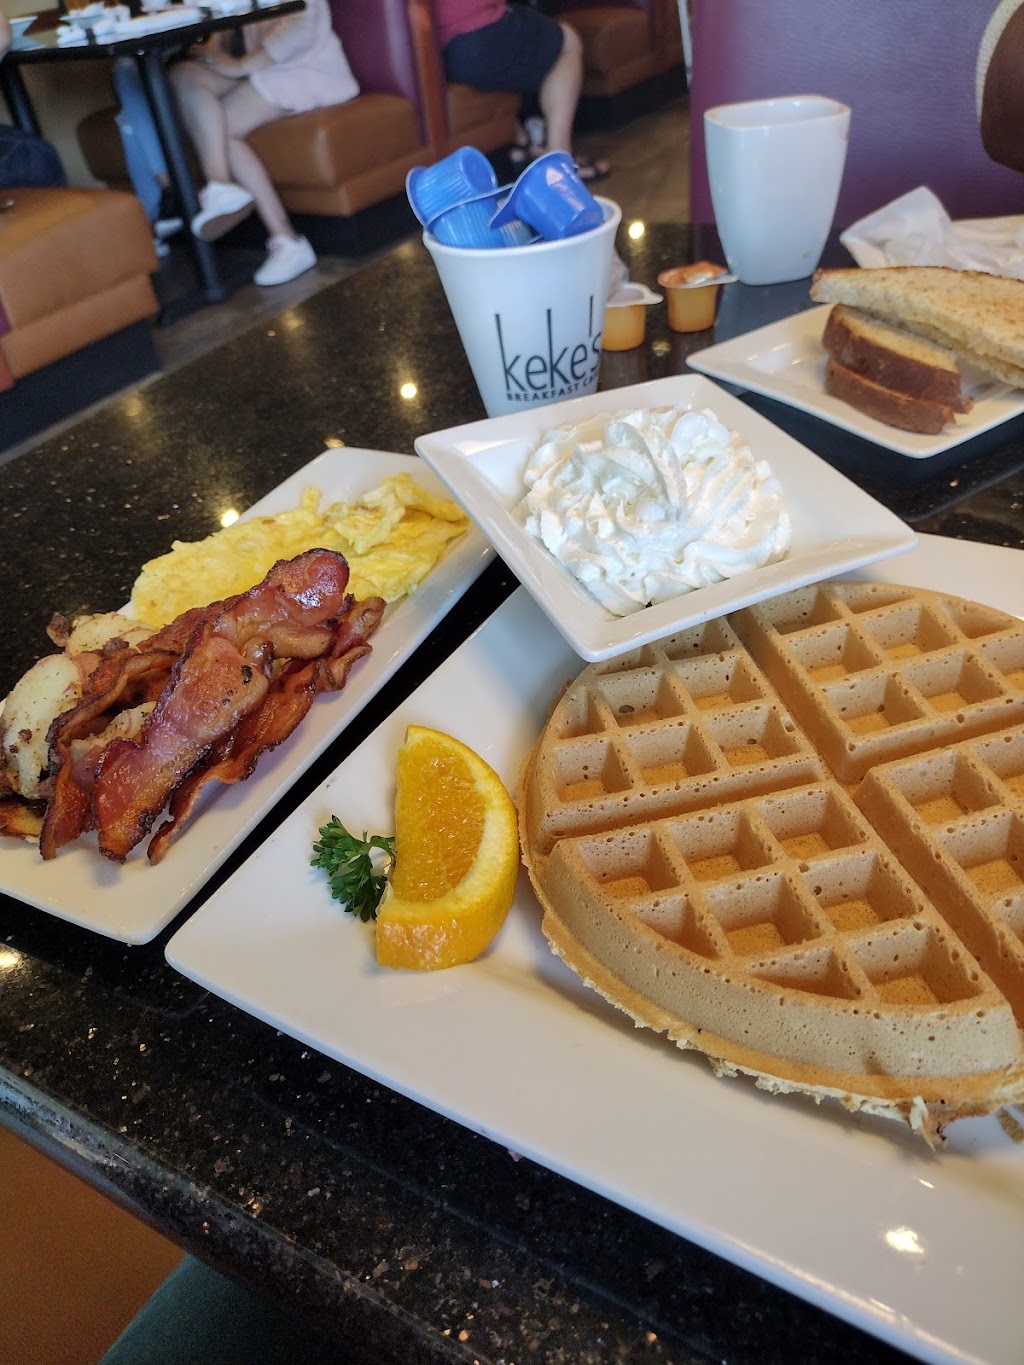 Kekes Breakfast Cafe | 450 Durbin Pavilion Dr Ste E106, St Johns, FL 32259 | Phone: (904) 547-2284